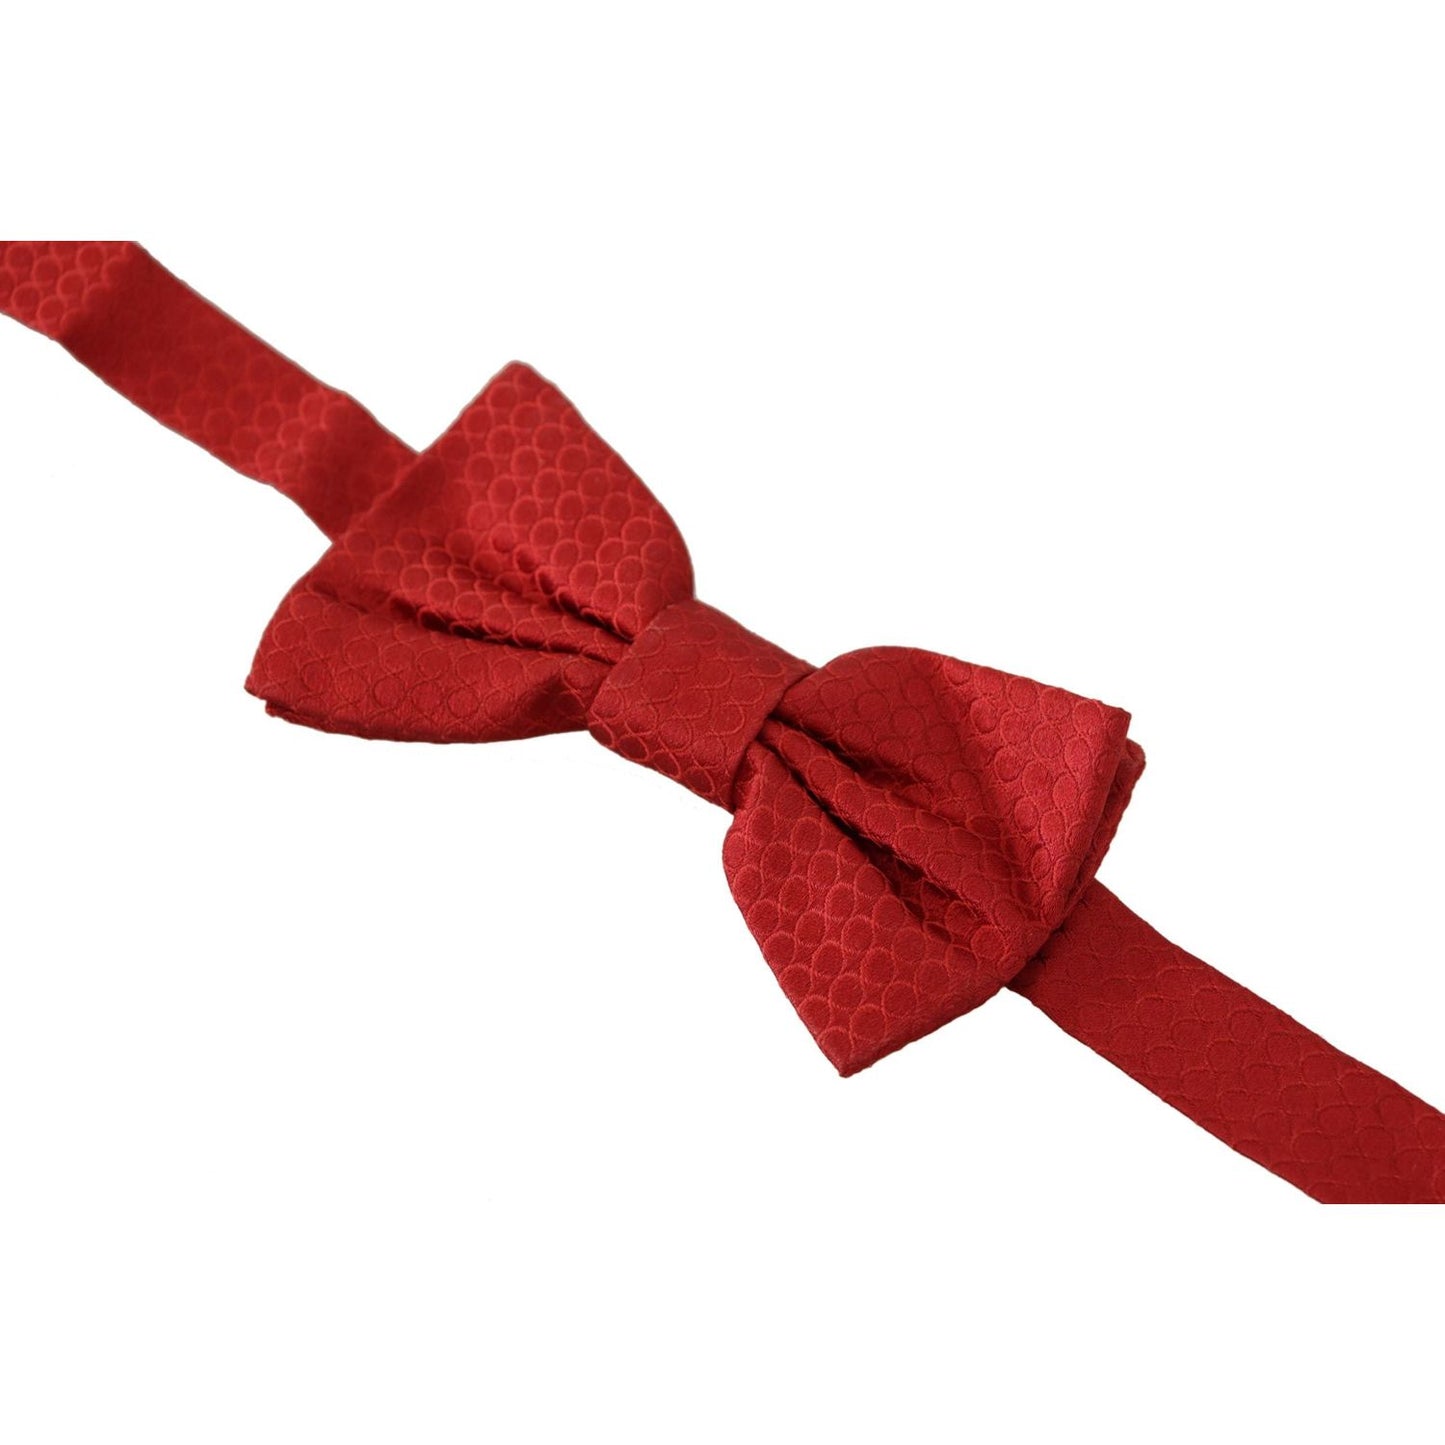 Dolce & Gabbana Elegant Red Silk Tied Bow Tie elegant-red-silk-tied-bow-tie IMG_7629-scaled-0c521b35-f0c.jpg